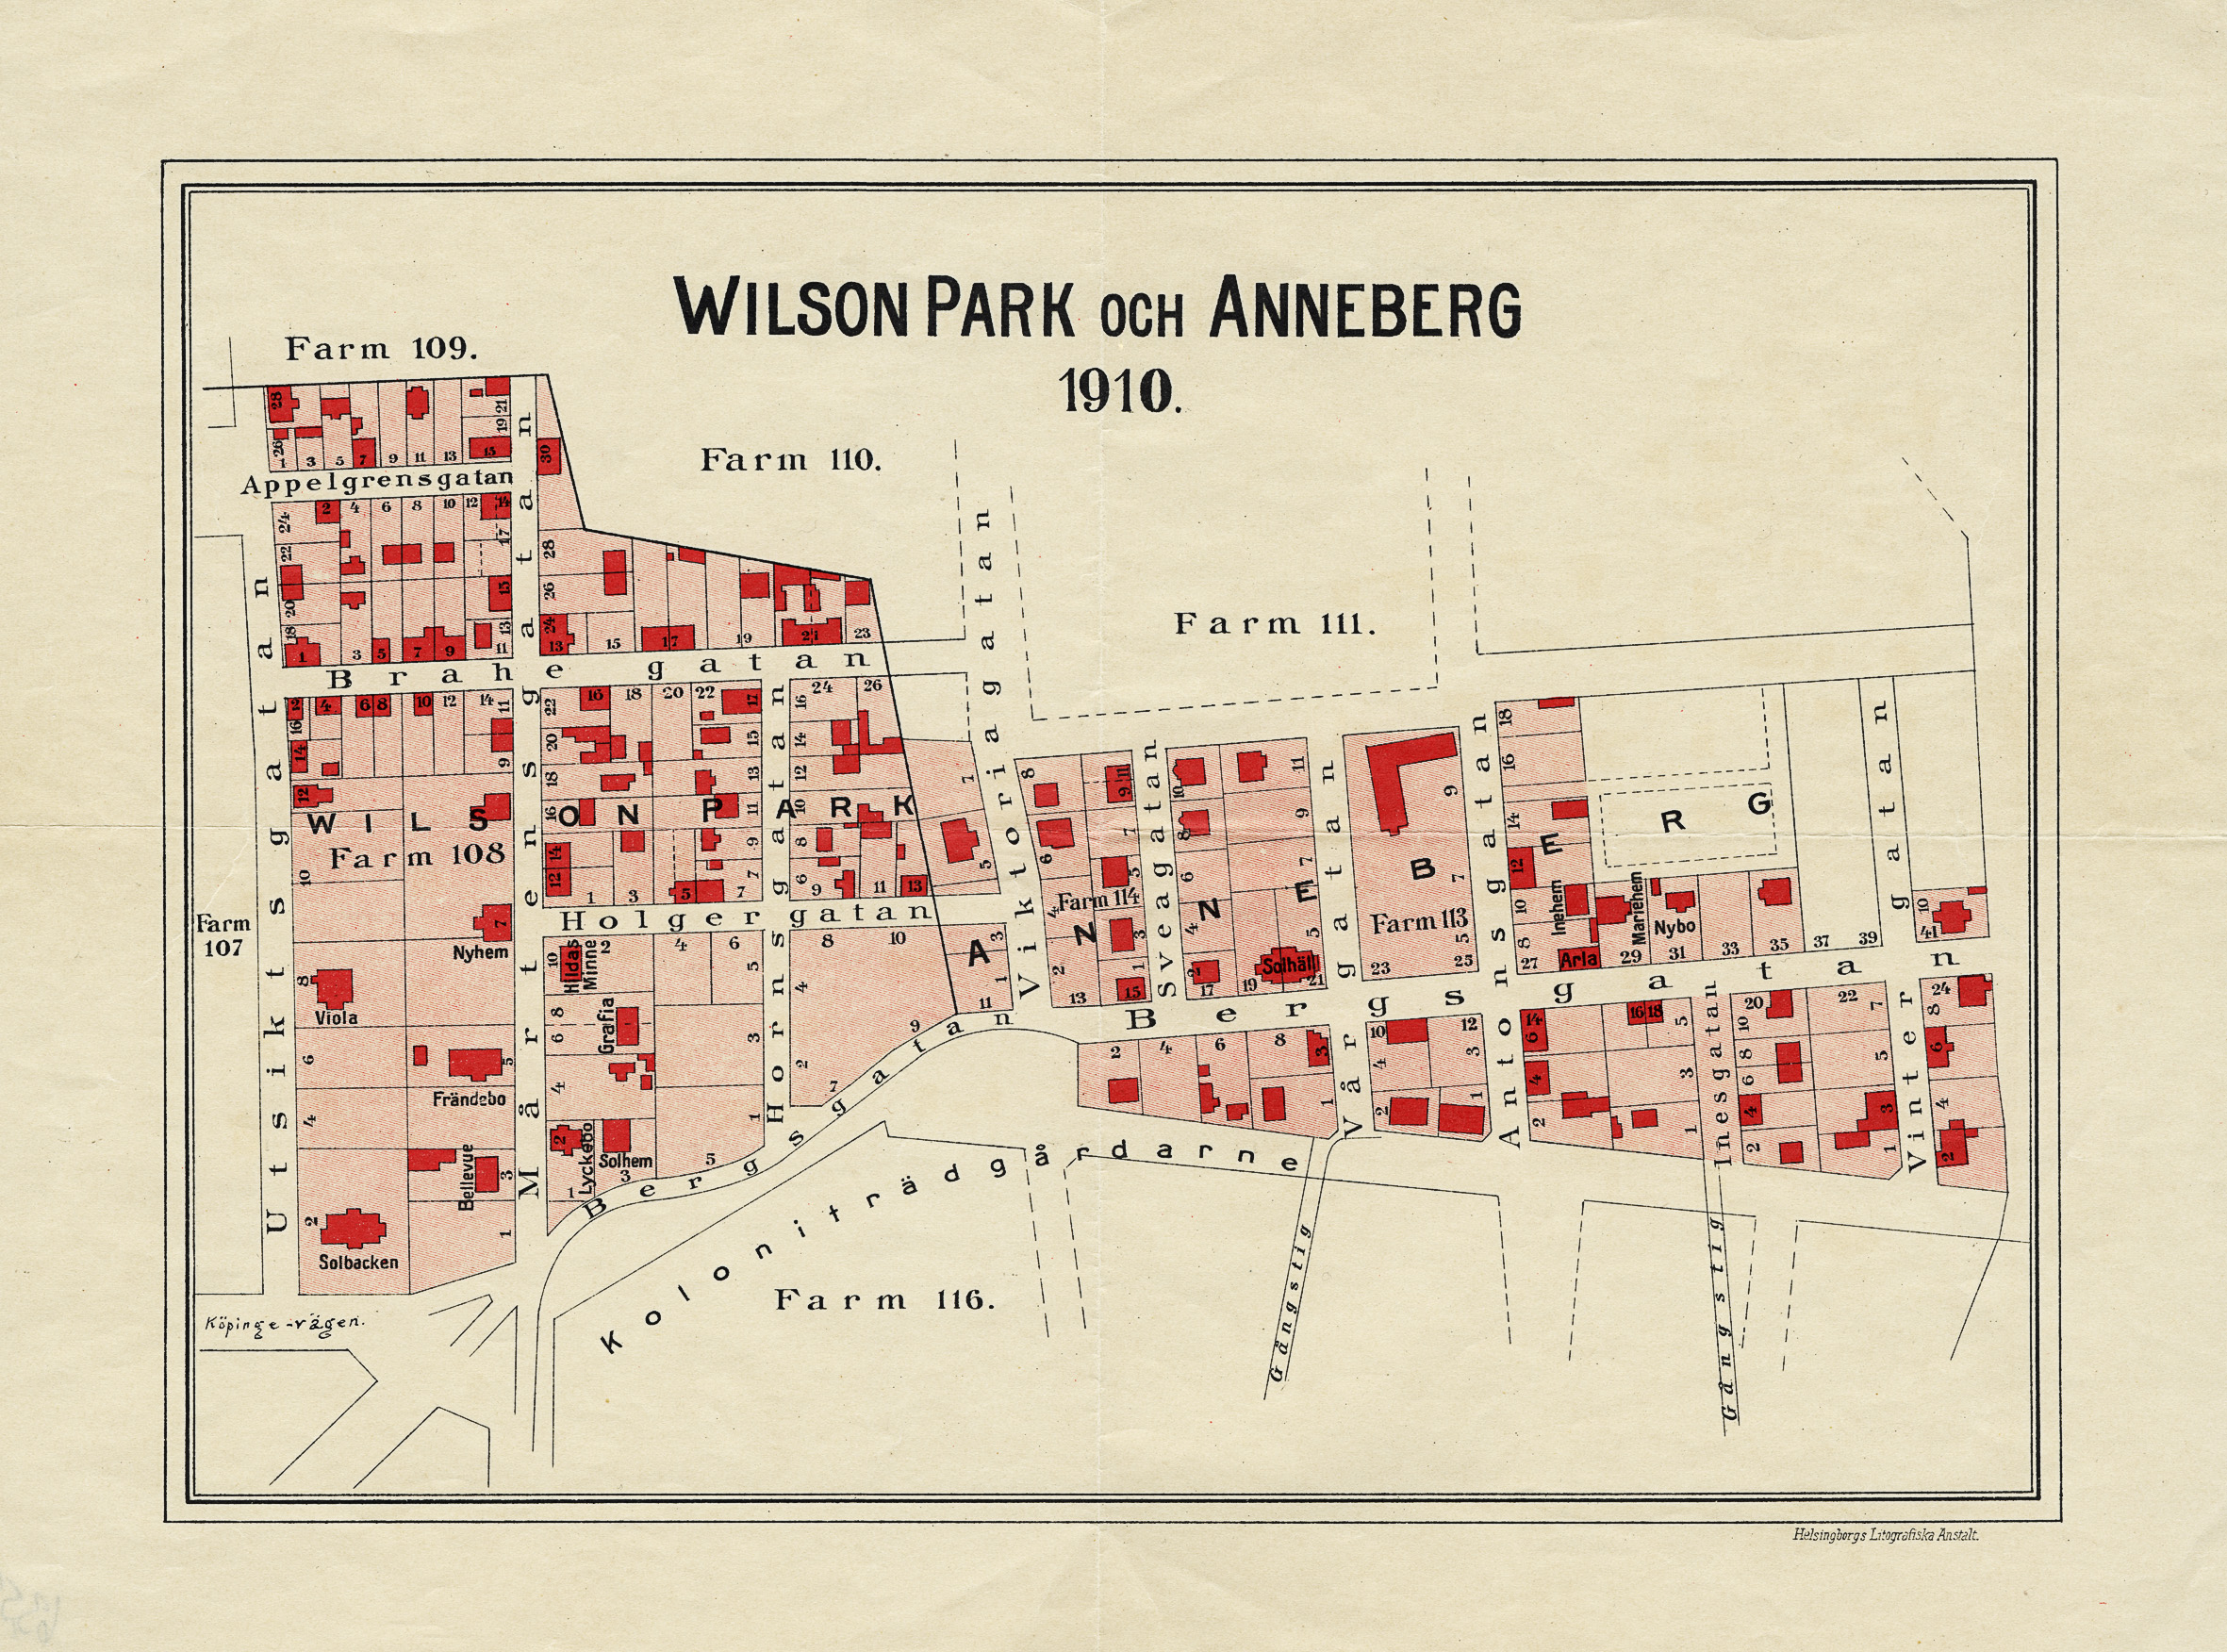 Wilson park och Anneberg. Karta från 1910 över de två bostadsområdena, avgränsade av Viktoriagatan (senare Örebrogatan)